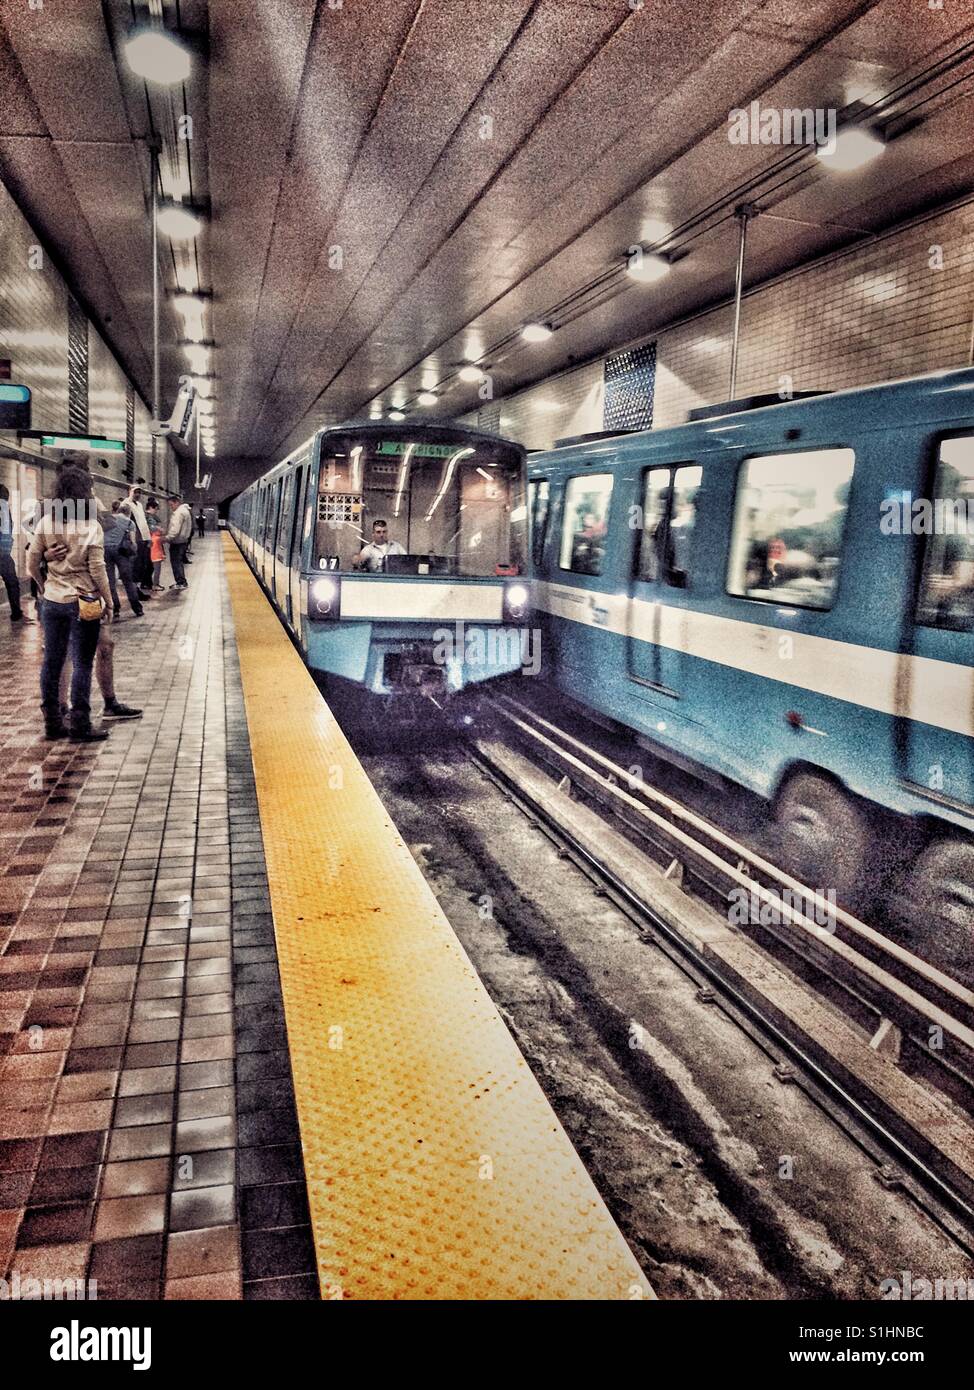 La station de métro souterraine, Montréal, Québec Banque D'Images